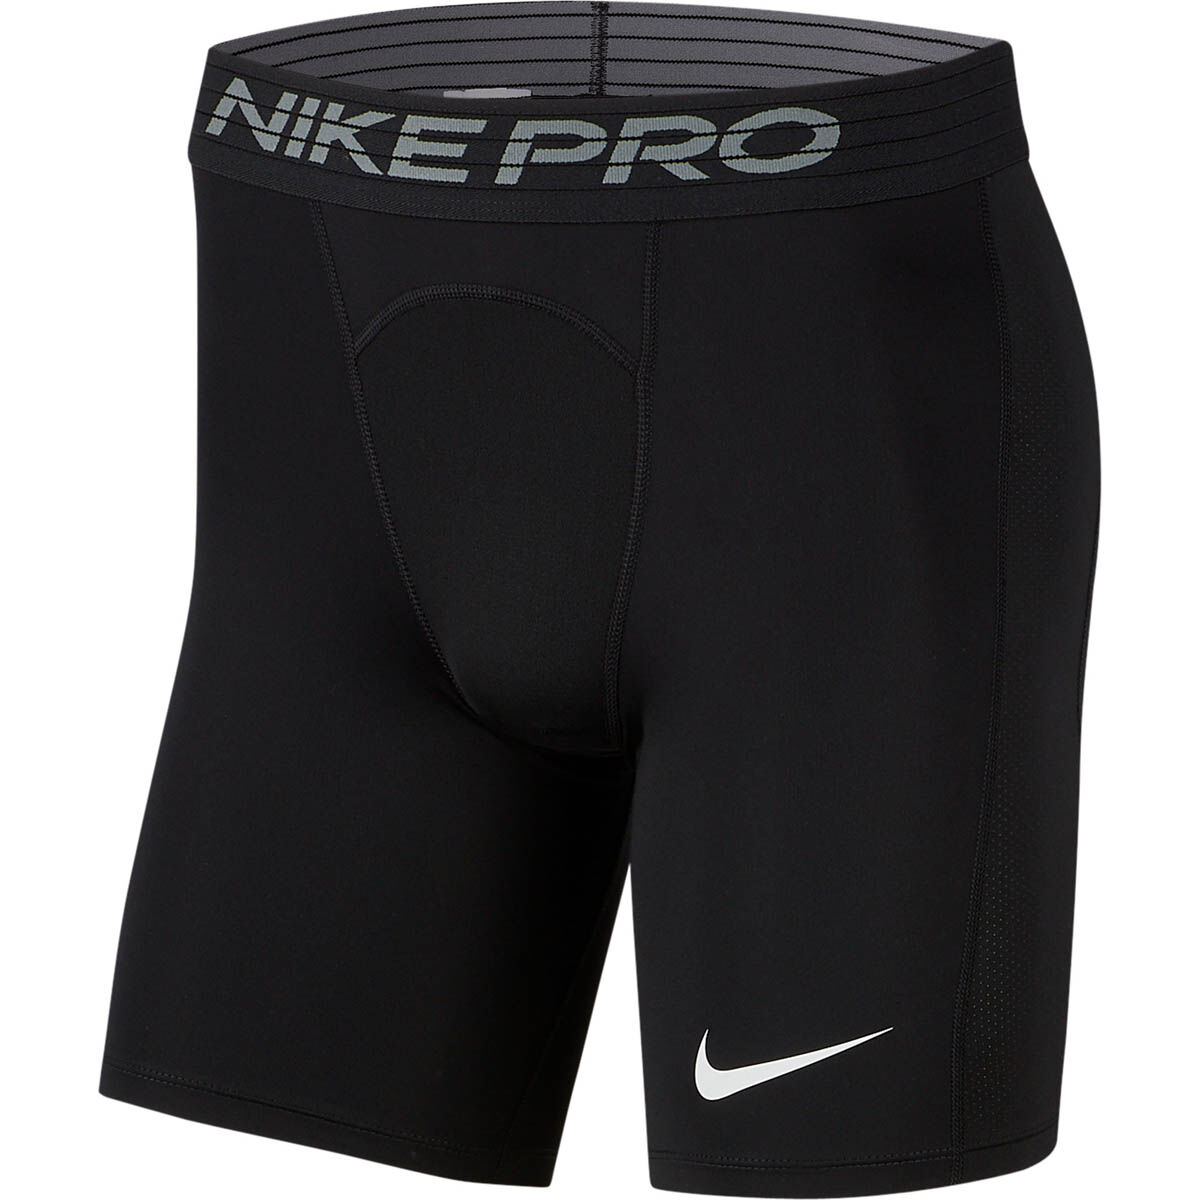 nike pro running shorts mens